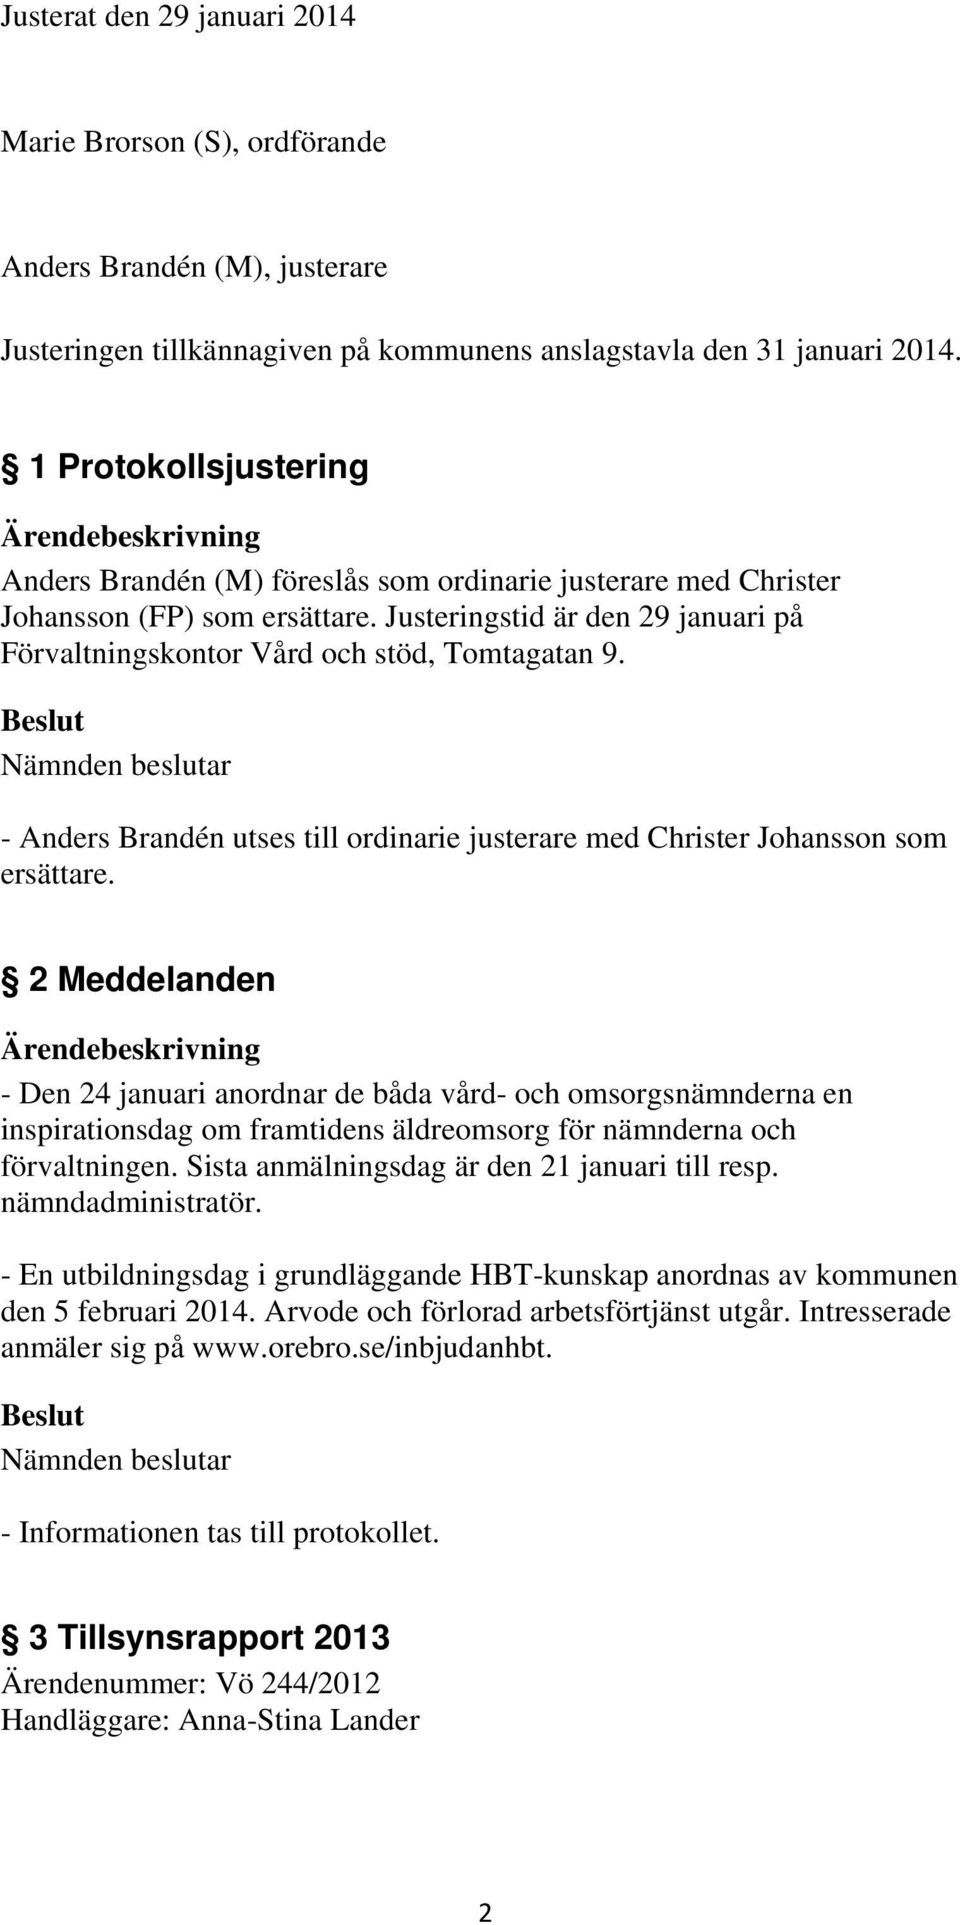 - Anders Brandén utses till ordinarie justerare med Christer Johansson som ersättare.